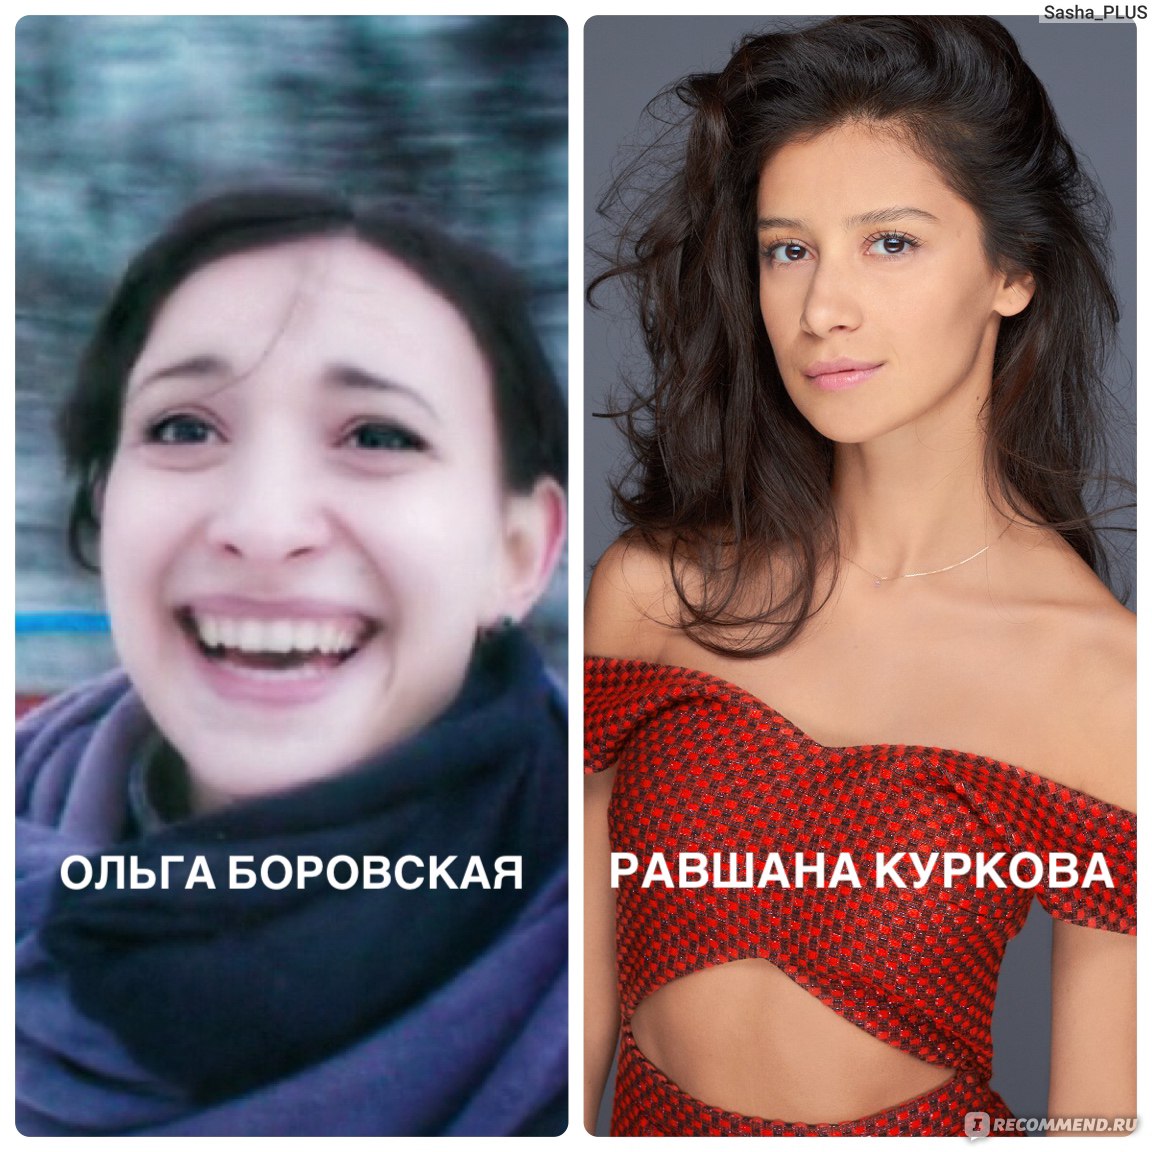 Ольга Боровская и Равшана Куркова